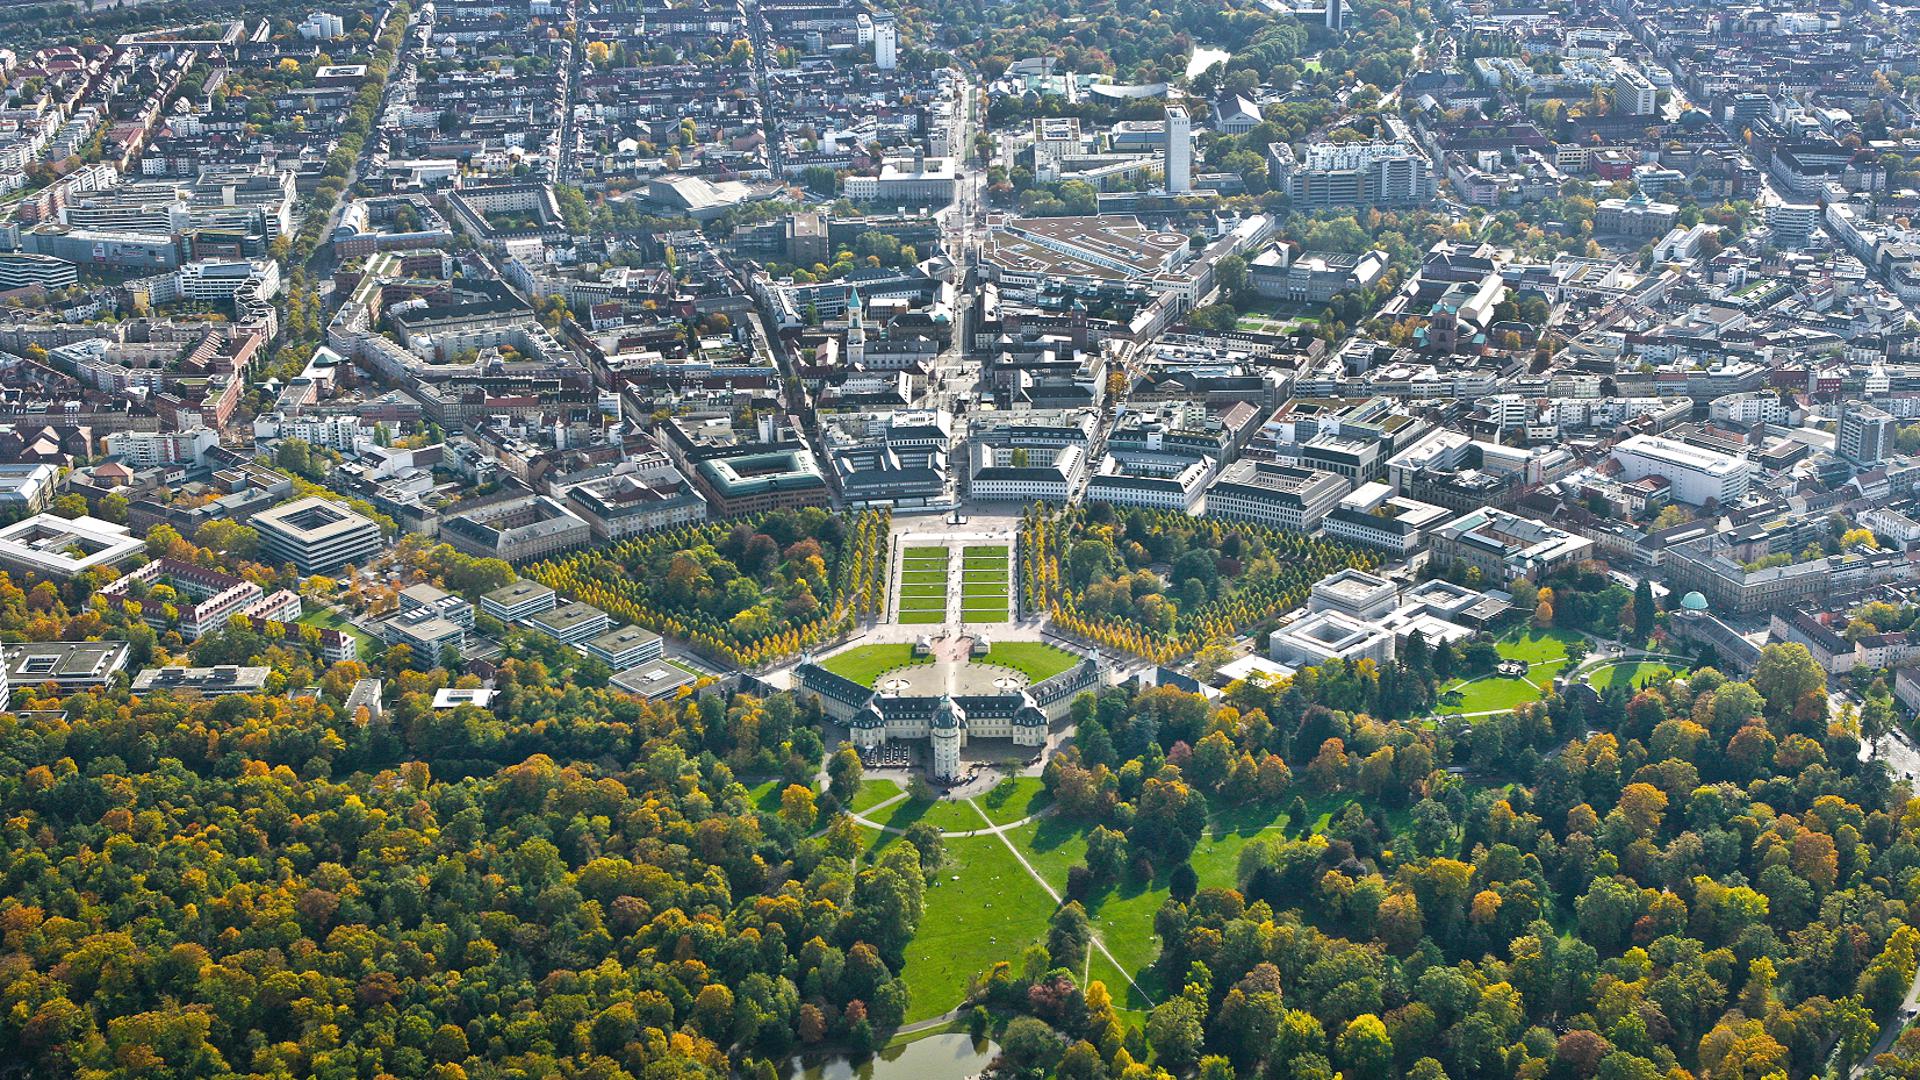 Ein Luftbild der Stadt Karlsruhe, auf dem die Fächer-Struktur der Stadt zur Geltung kommt.